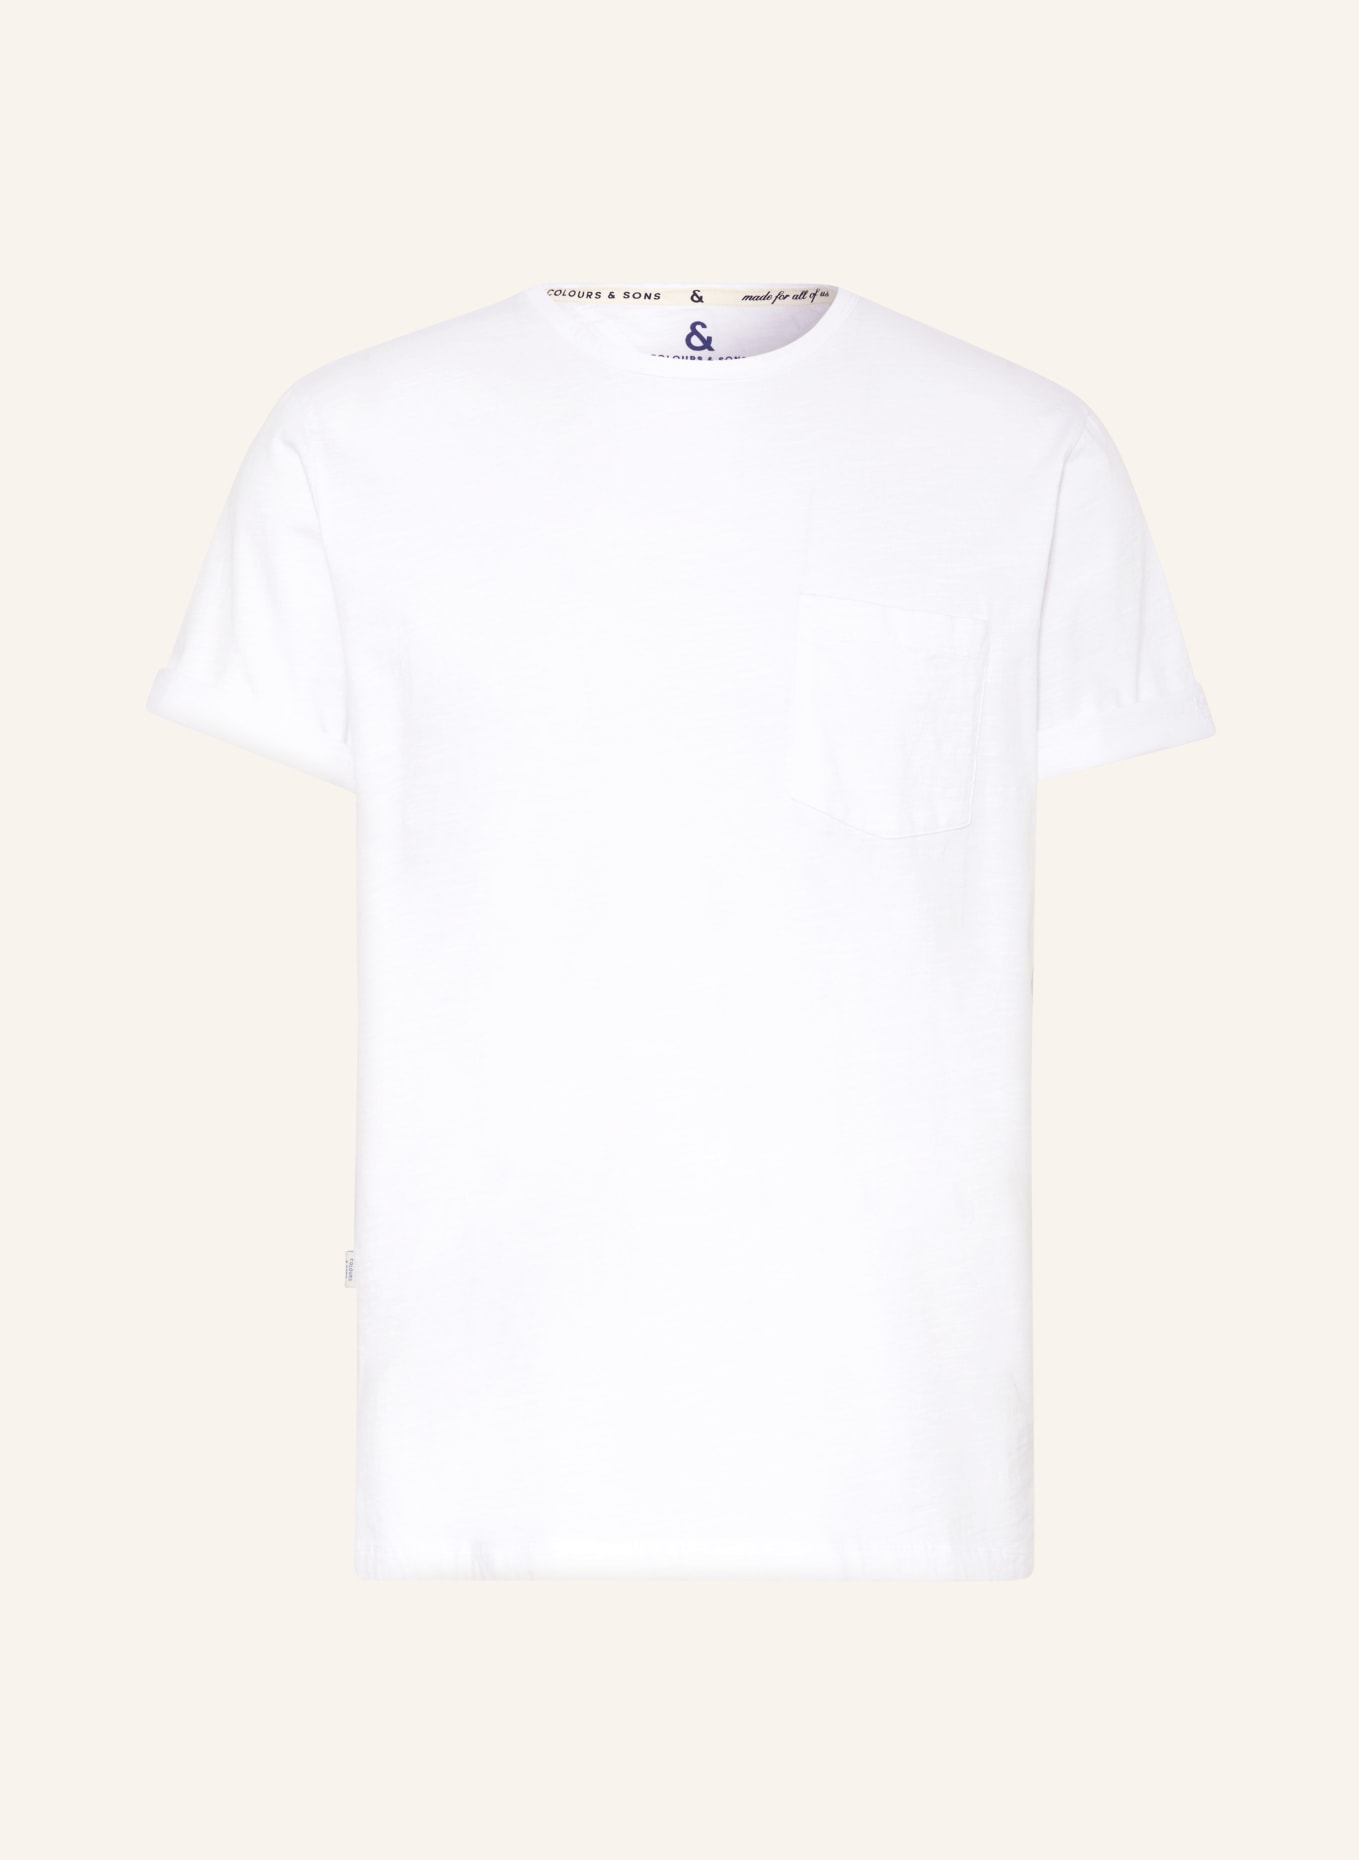 COLOURS & SONS T-shirt, Color: WHITE (Image 1)